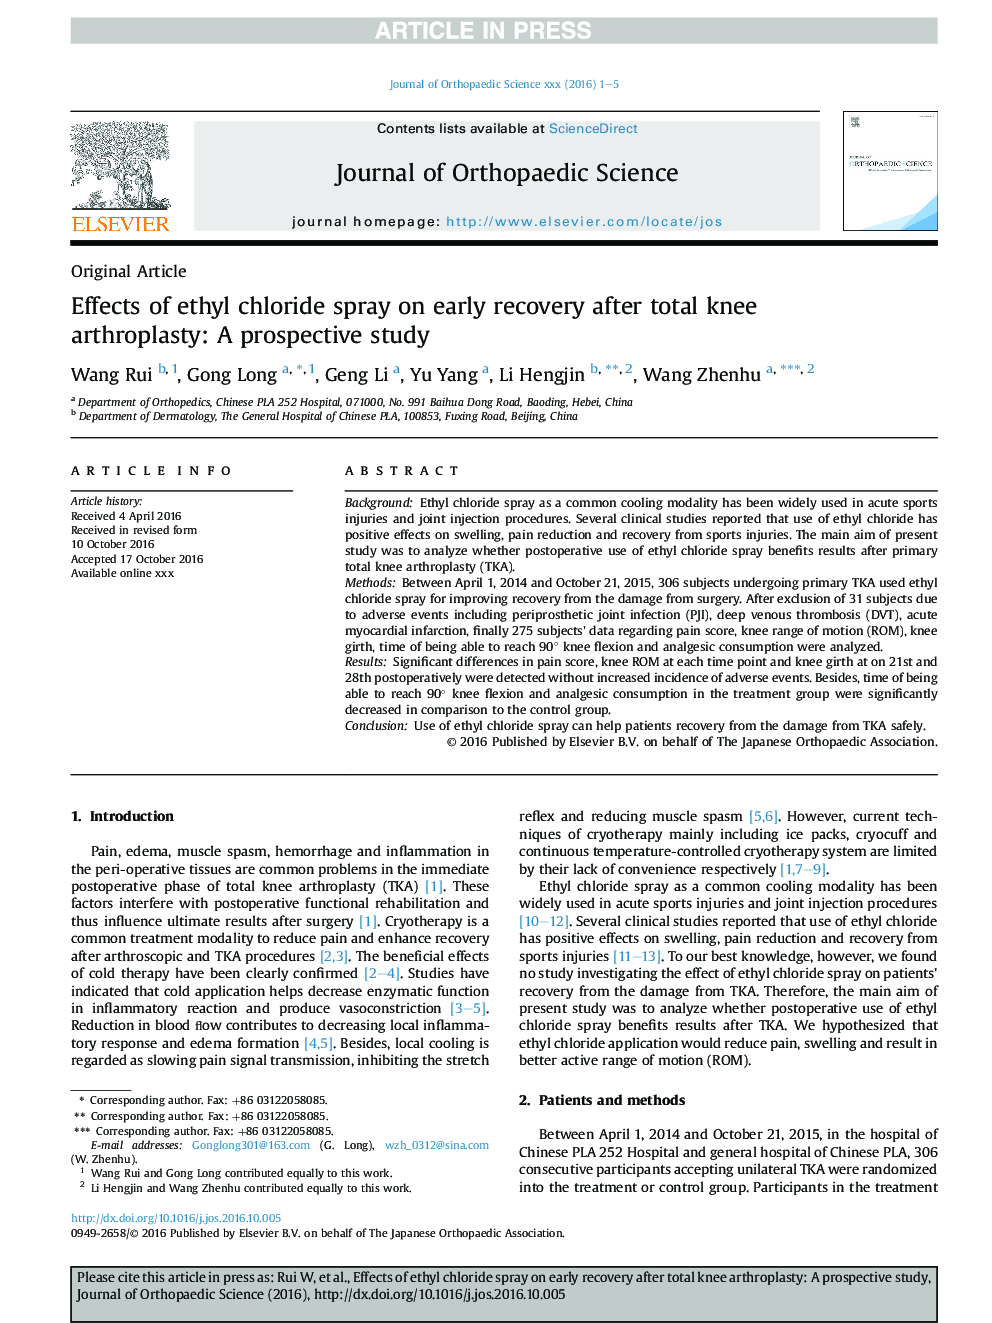 اثر اسپری اتیل کلراید بر بهبود زودرس پس از آرتروپلاستی کامل زانو: یک مطالعه آینده نگر 